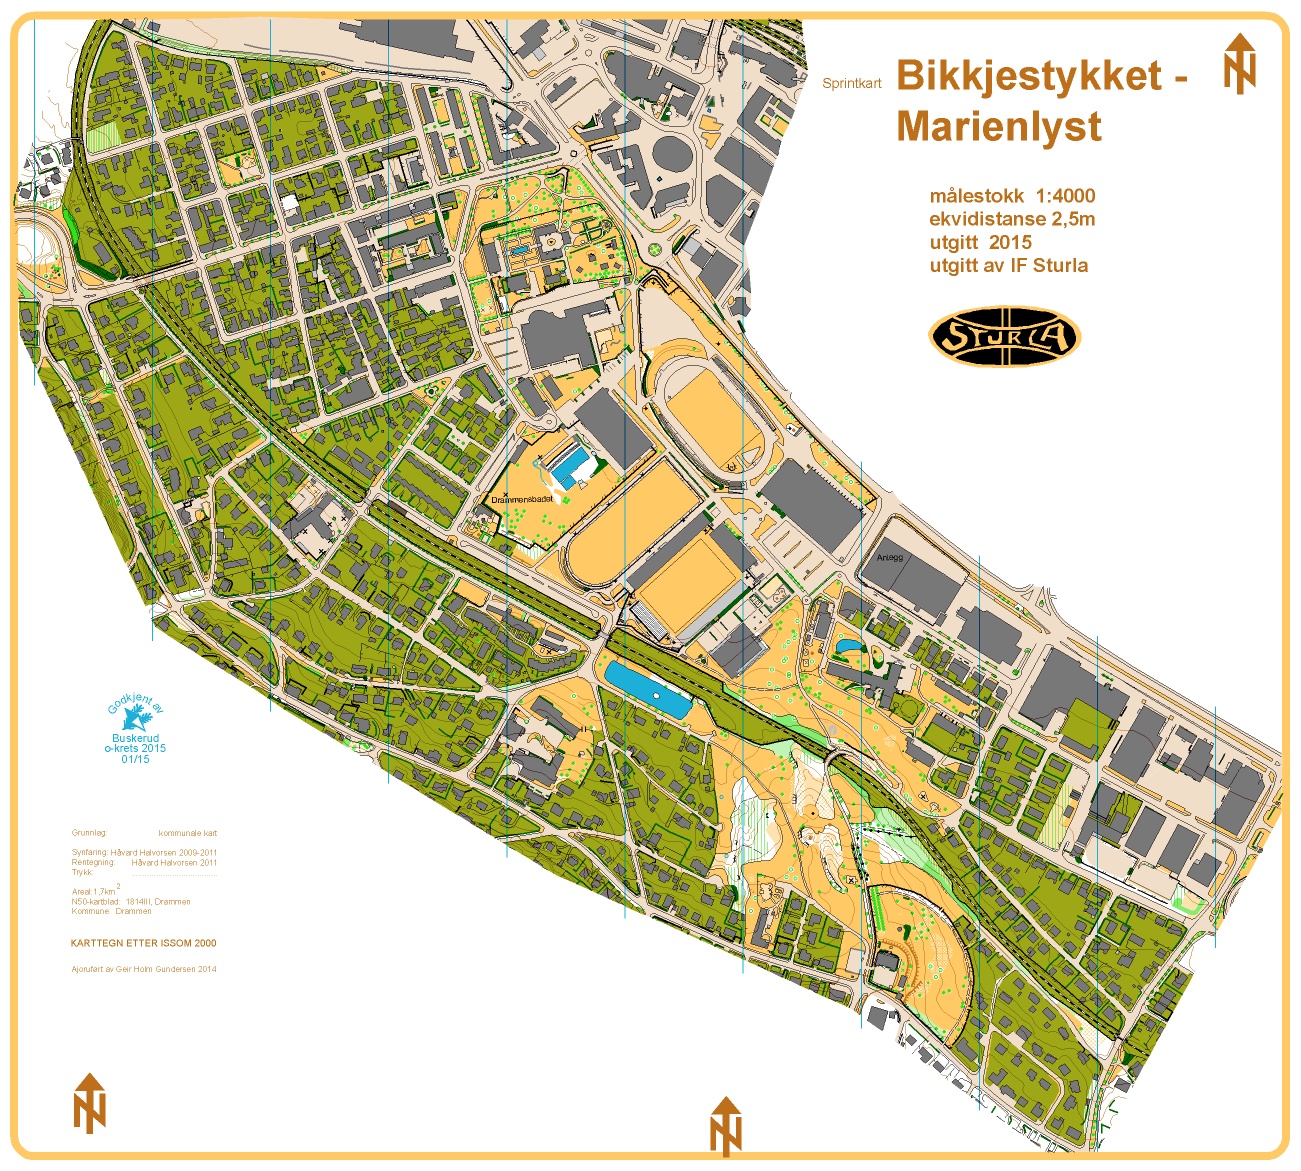 Bikkjestykket-Marienlyst (2015-05-01)